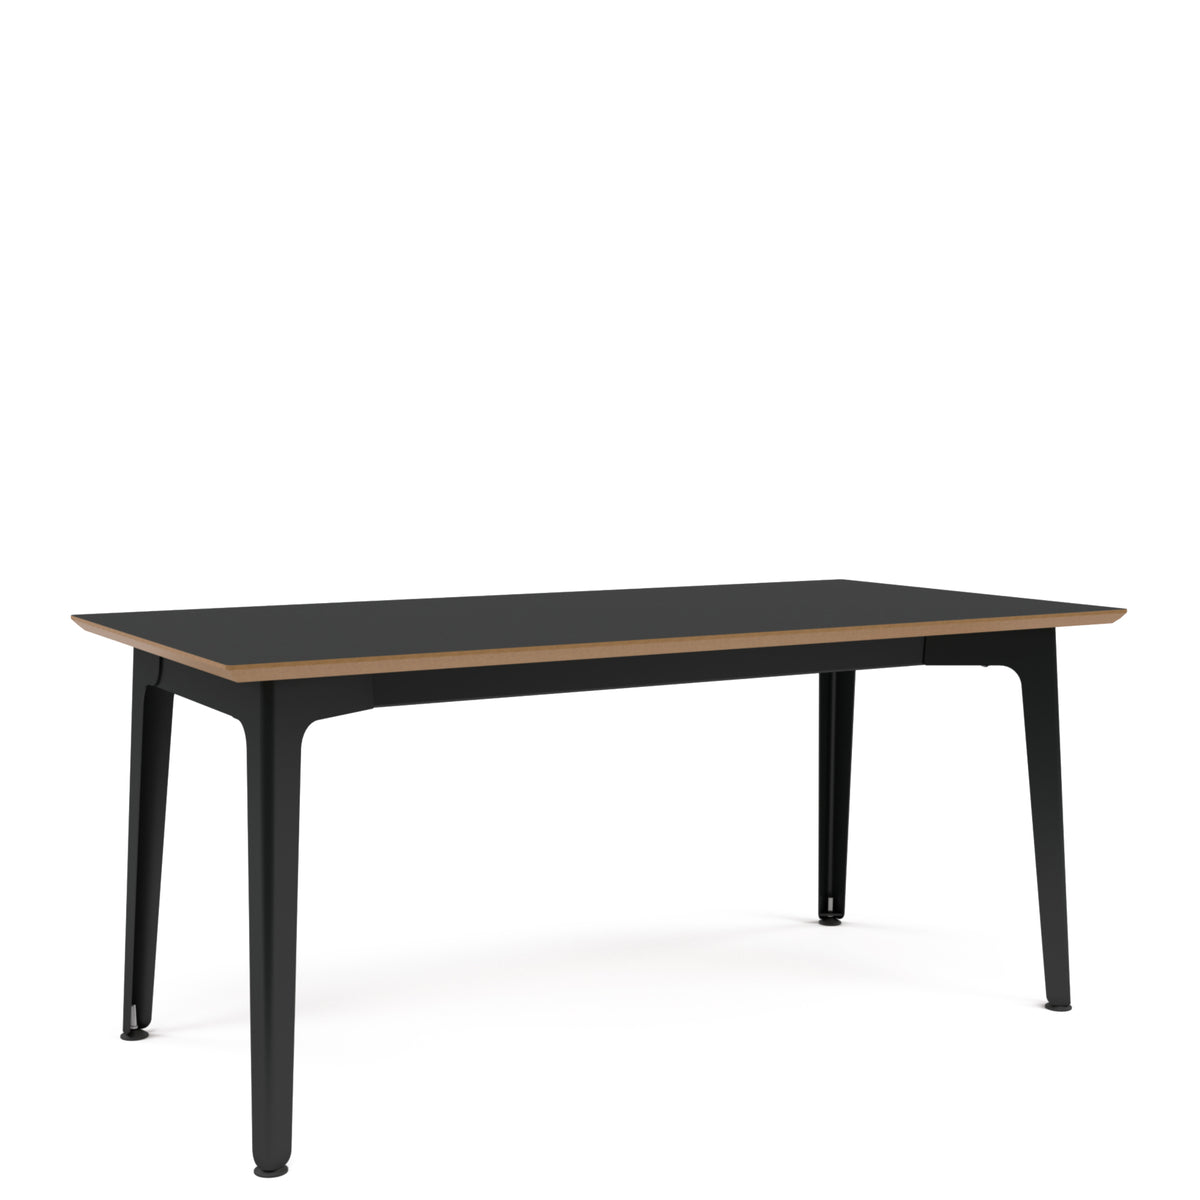 Fold Metal Table 1600x800